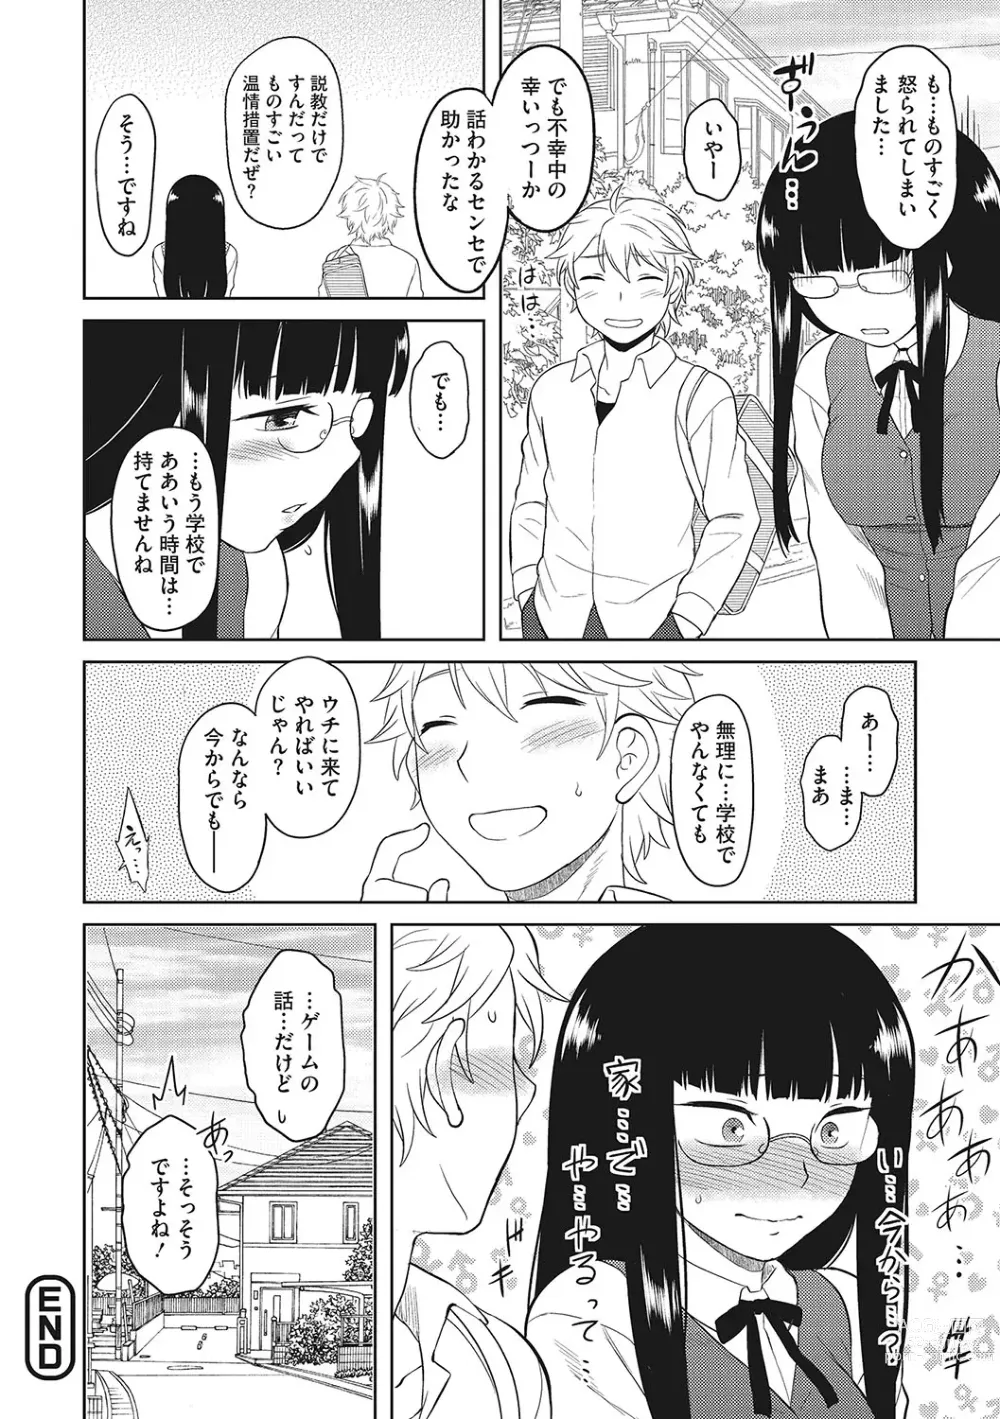 Page 21 of manga Yuuwaku Angle